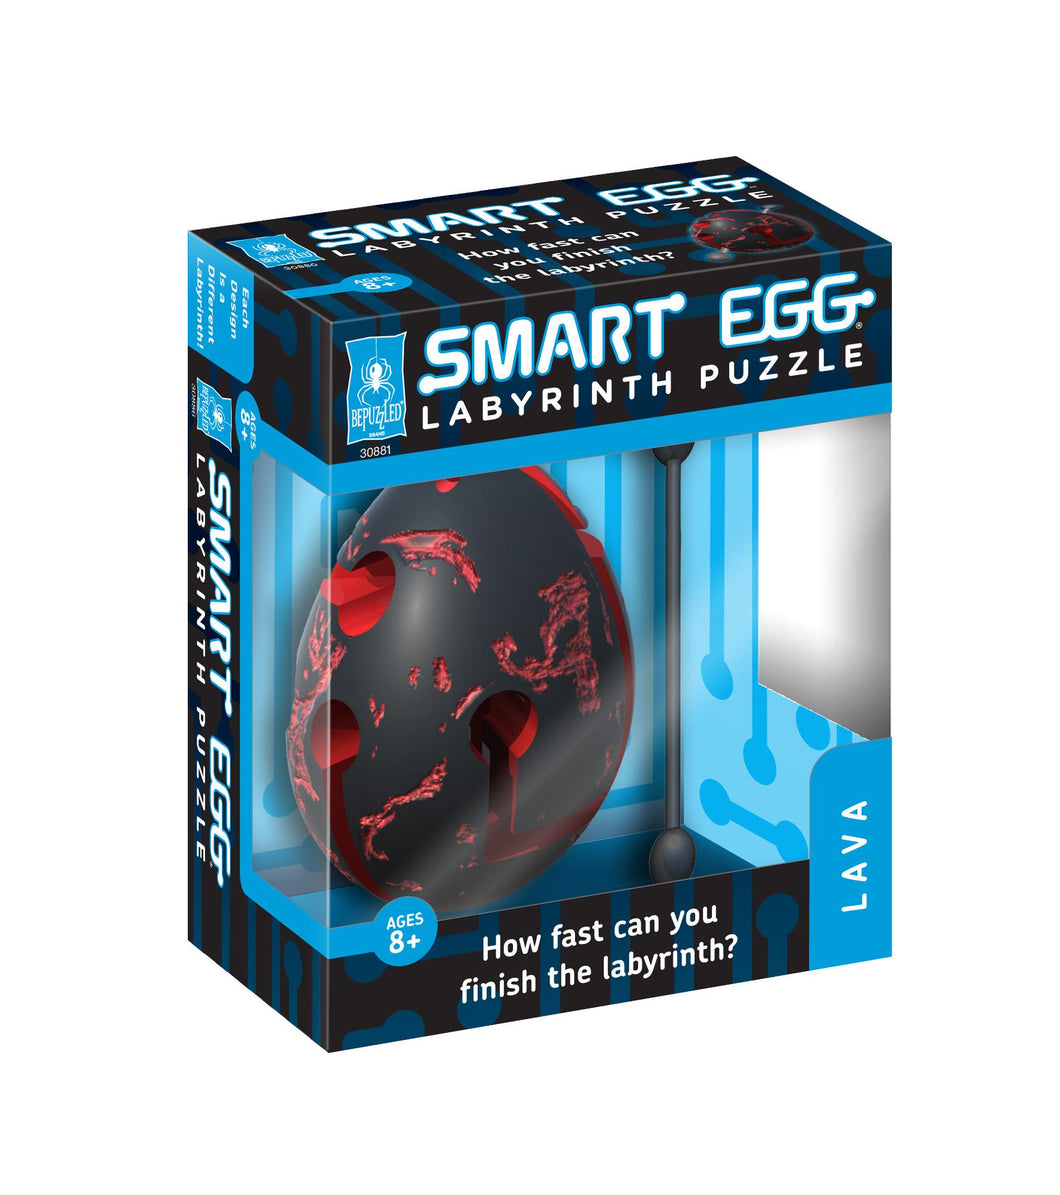 Smart Egg Labyrinth Puzzle - Lava